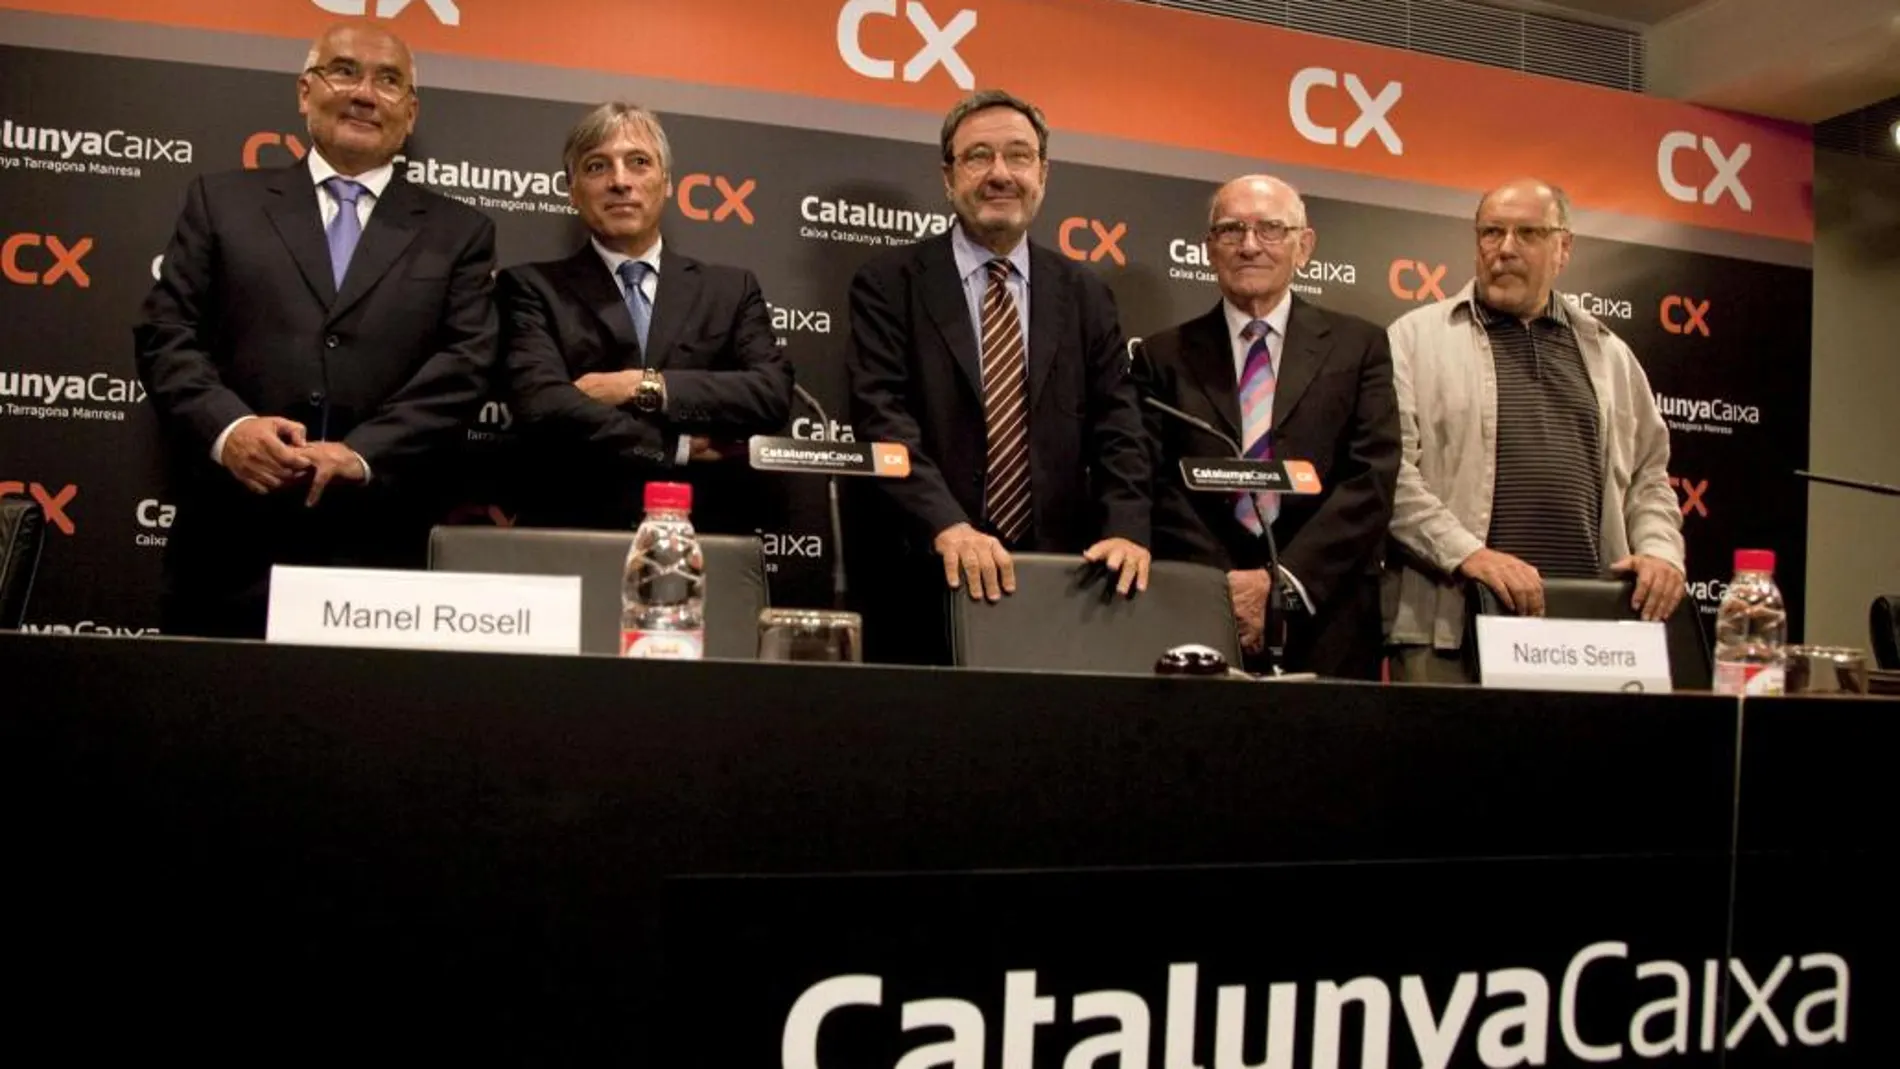 Los directivos de la nueva entidad bancaria de ahorro "CatalunyaCaixa"